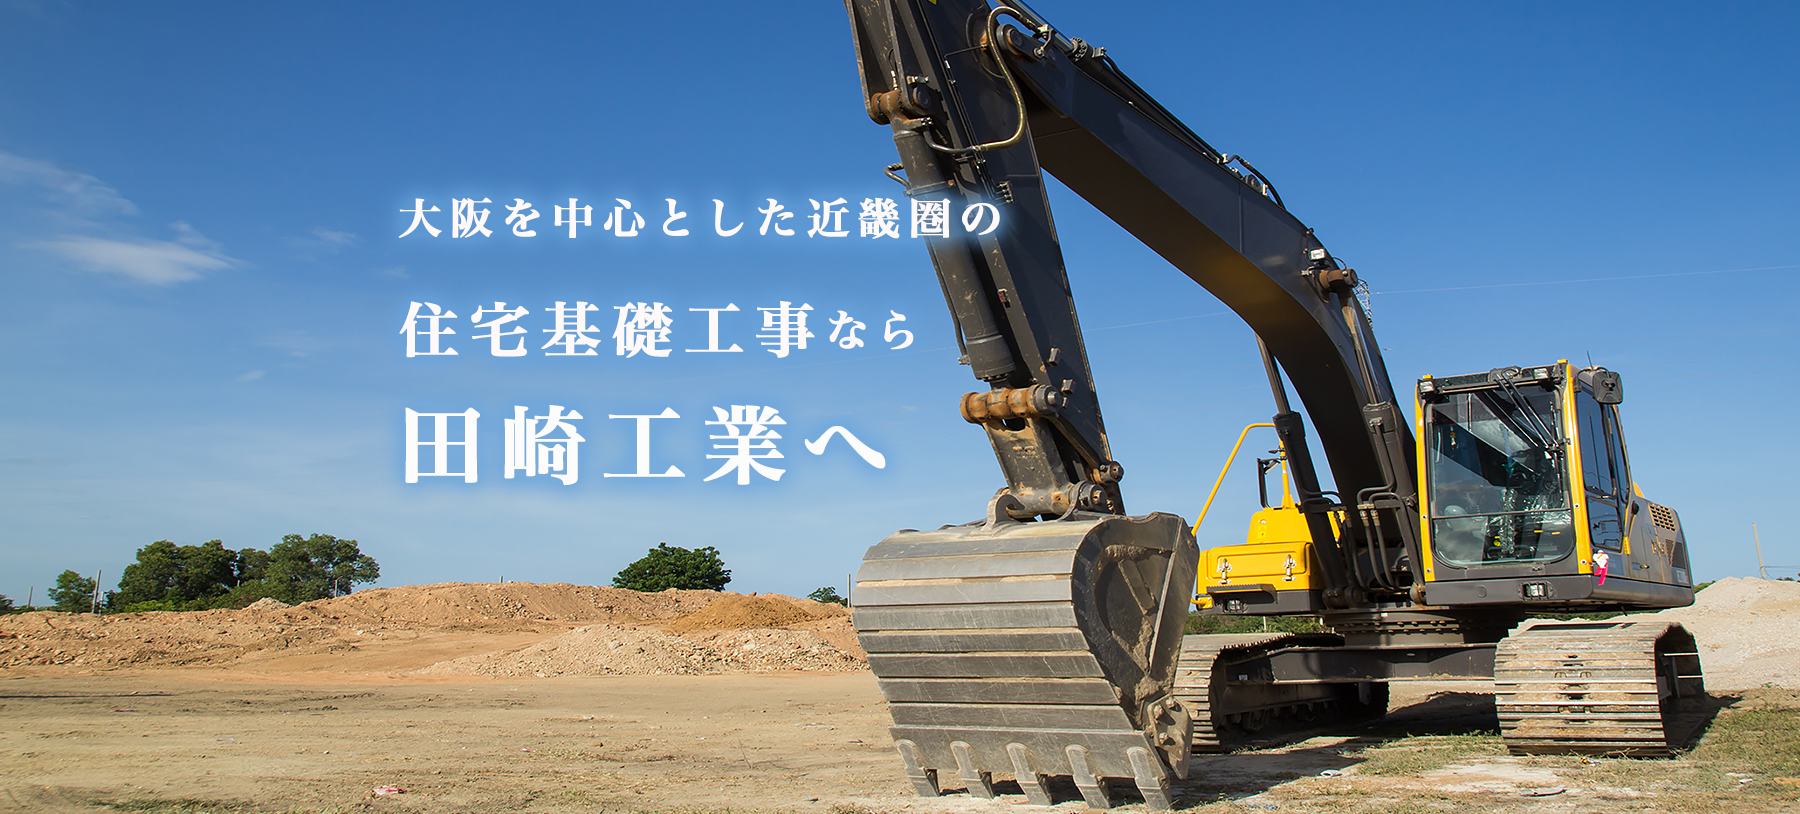 大阪を中心とした近畿圏の住宅基礎工事なら田崎工業へ